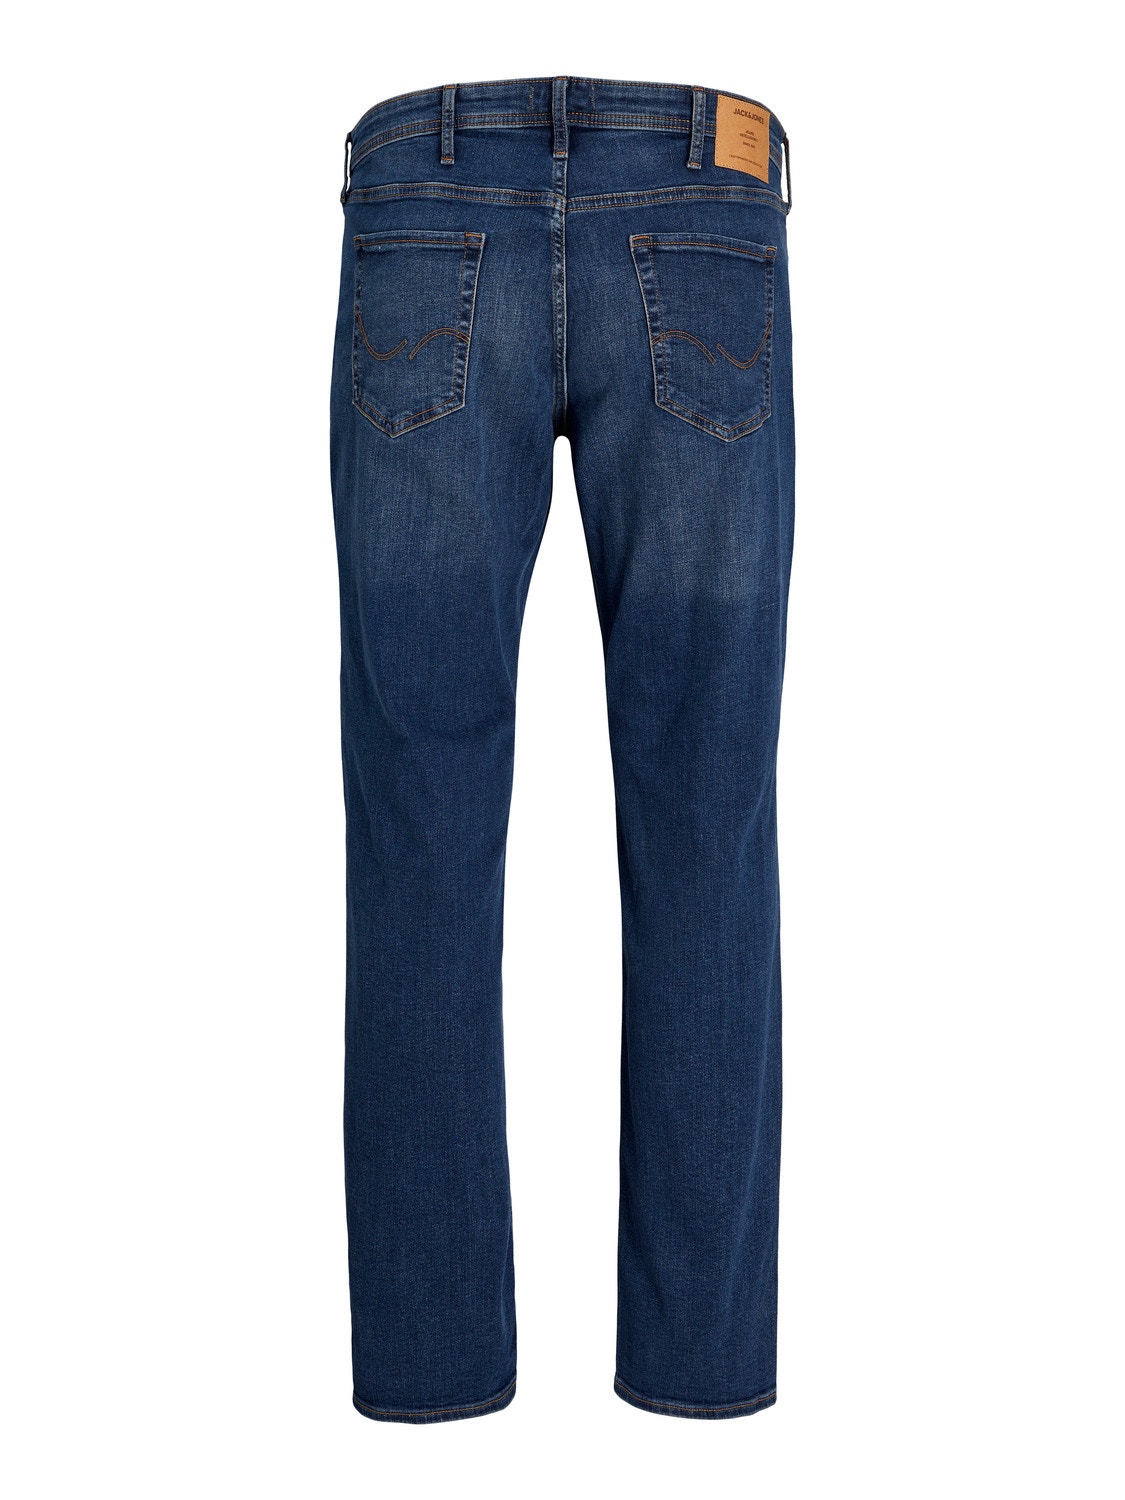 Jack & Jones Plus Size JJIMIKE JJORIGINAL AM 782 PLS Jeans tapered fit -Blue Denim - 12234769